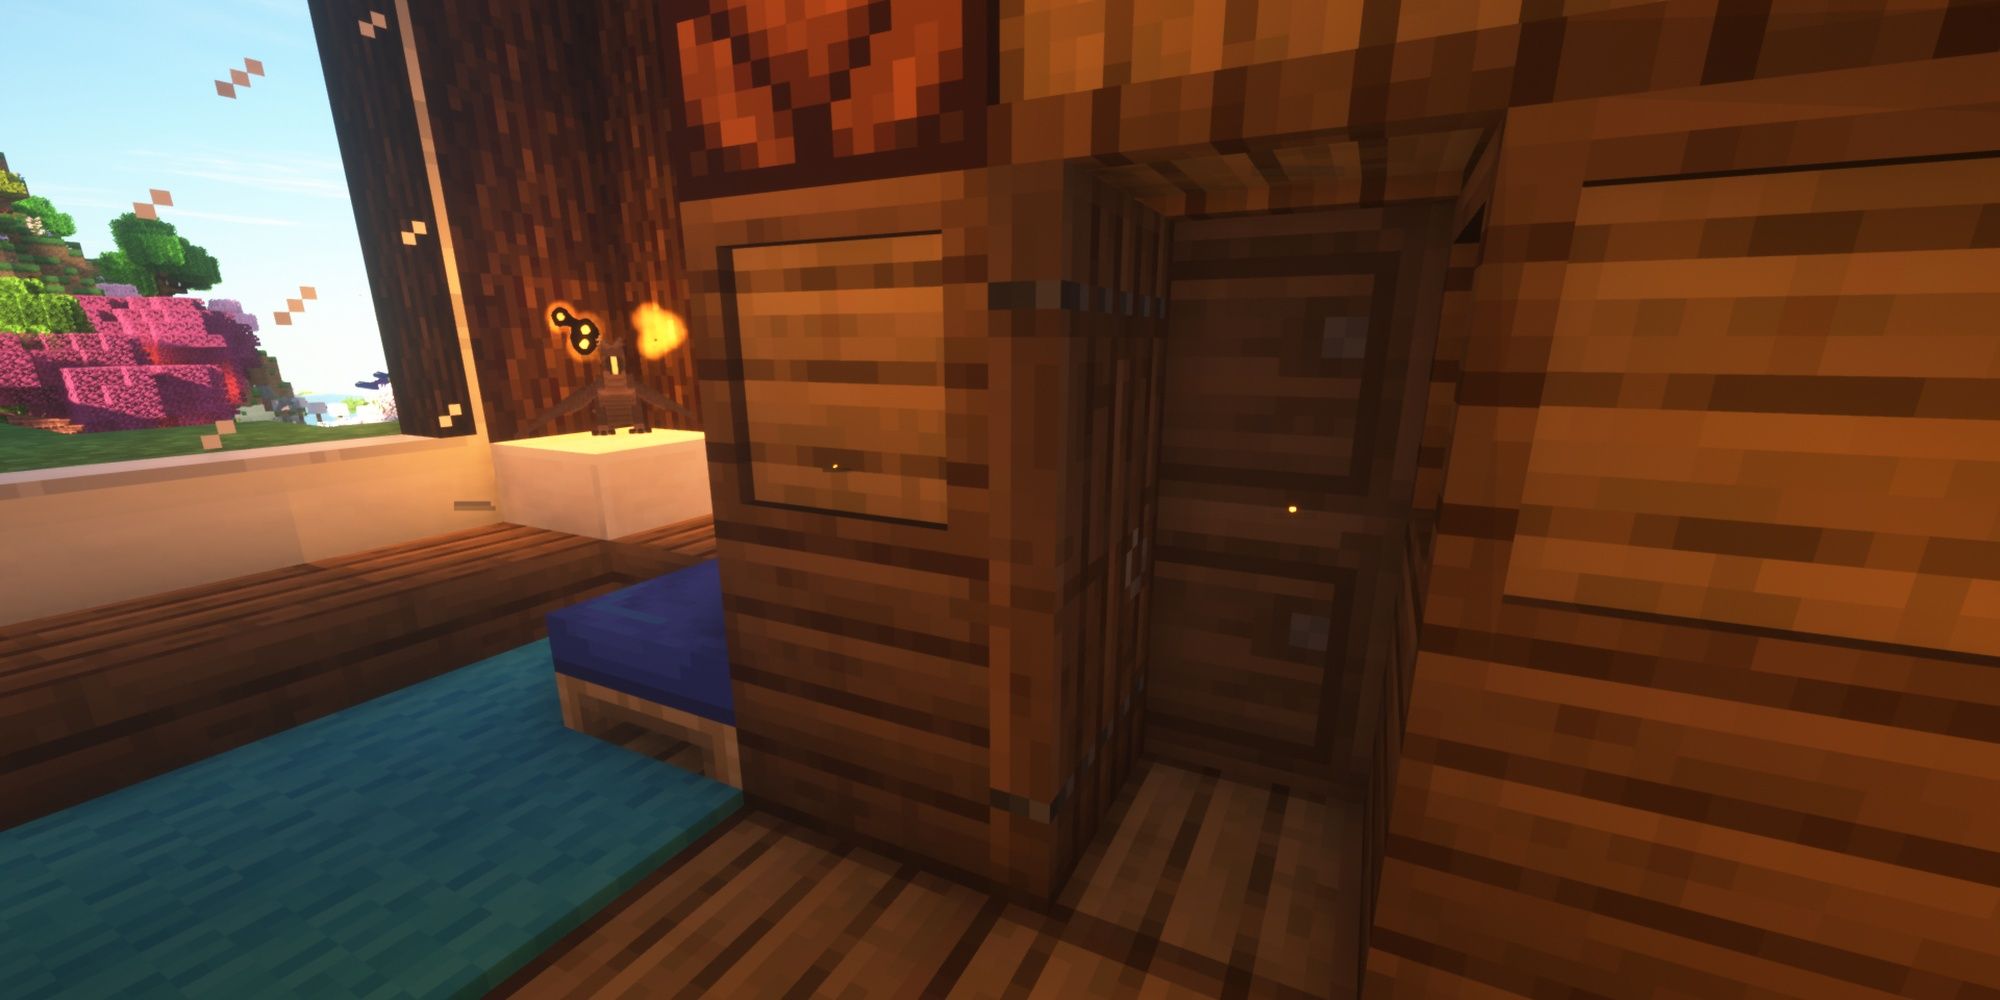 Minecraft Closet made of barrels with the door open